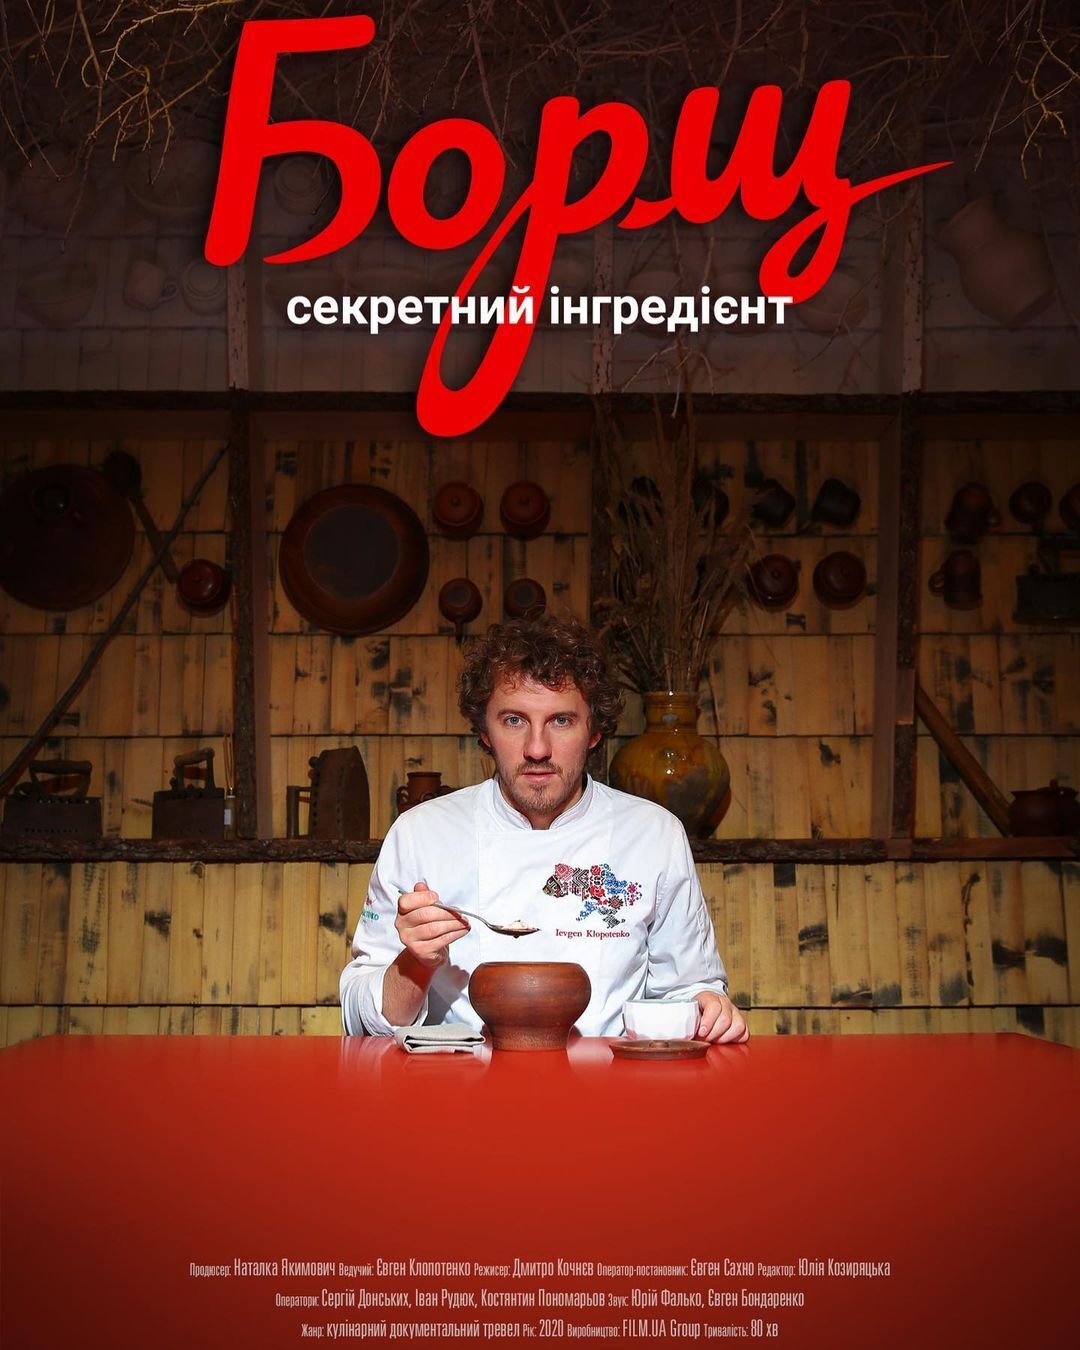 Netflix had shown the Ukrainian documentary ''Borscht. Secret ingredient'' with Yevhen Klopotenko